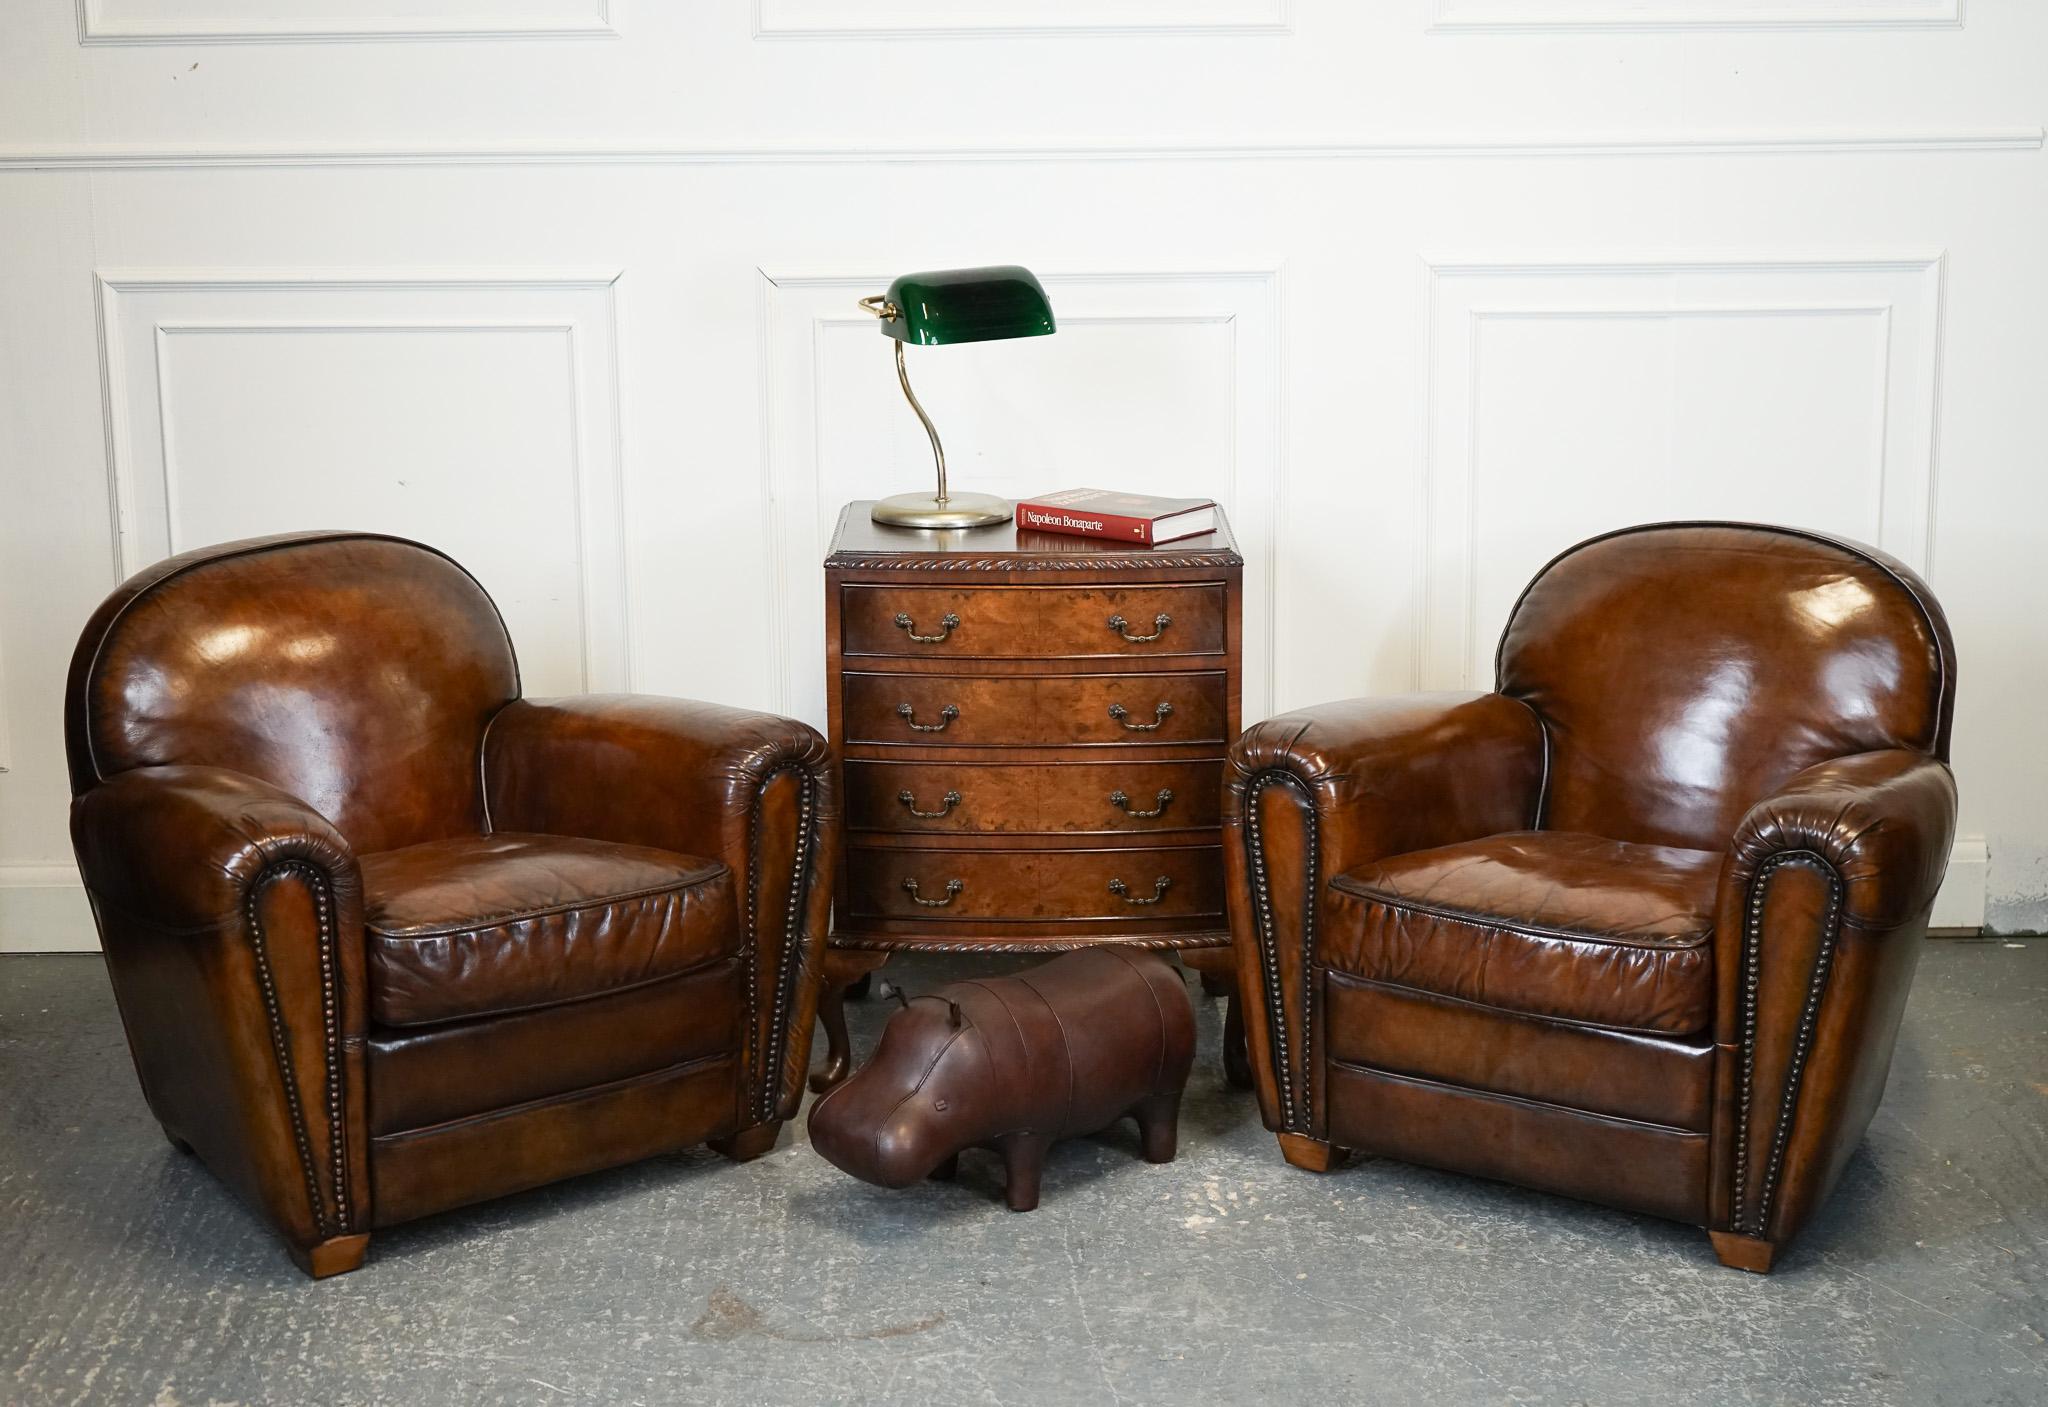 Antiquitäten aus London

Wir freuen uns, dieses atemberaubende Paar handgefärbter Stühle im Art-Déco-Stil zum Verkauf anzubieten.

Dieses Paar Clubsessel im Art-Déco-Stil wurde nach traditioneller englischer Technik sorgfältig von Hand gefärbt. Der